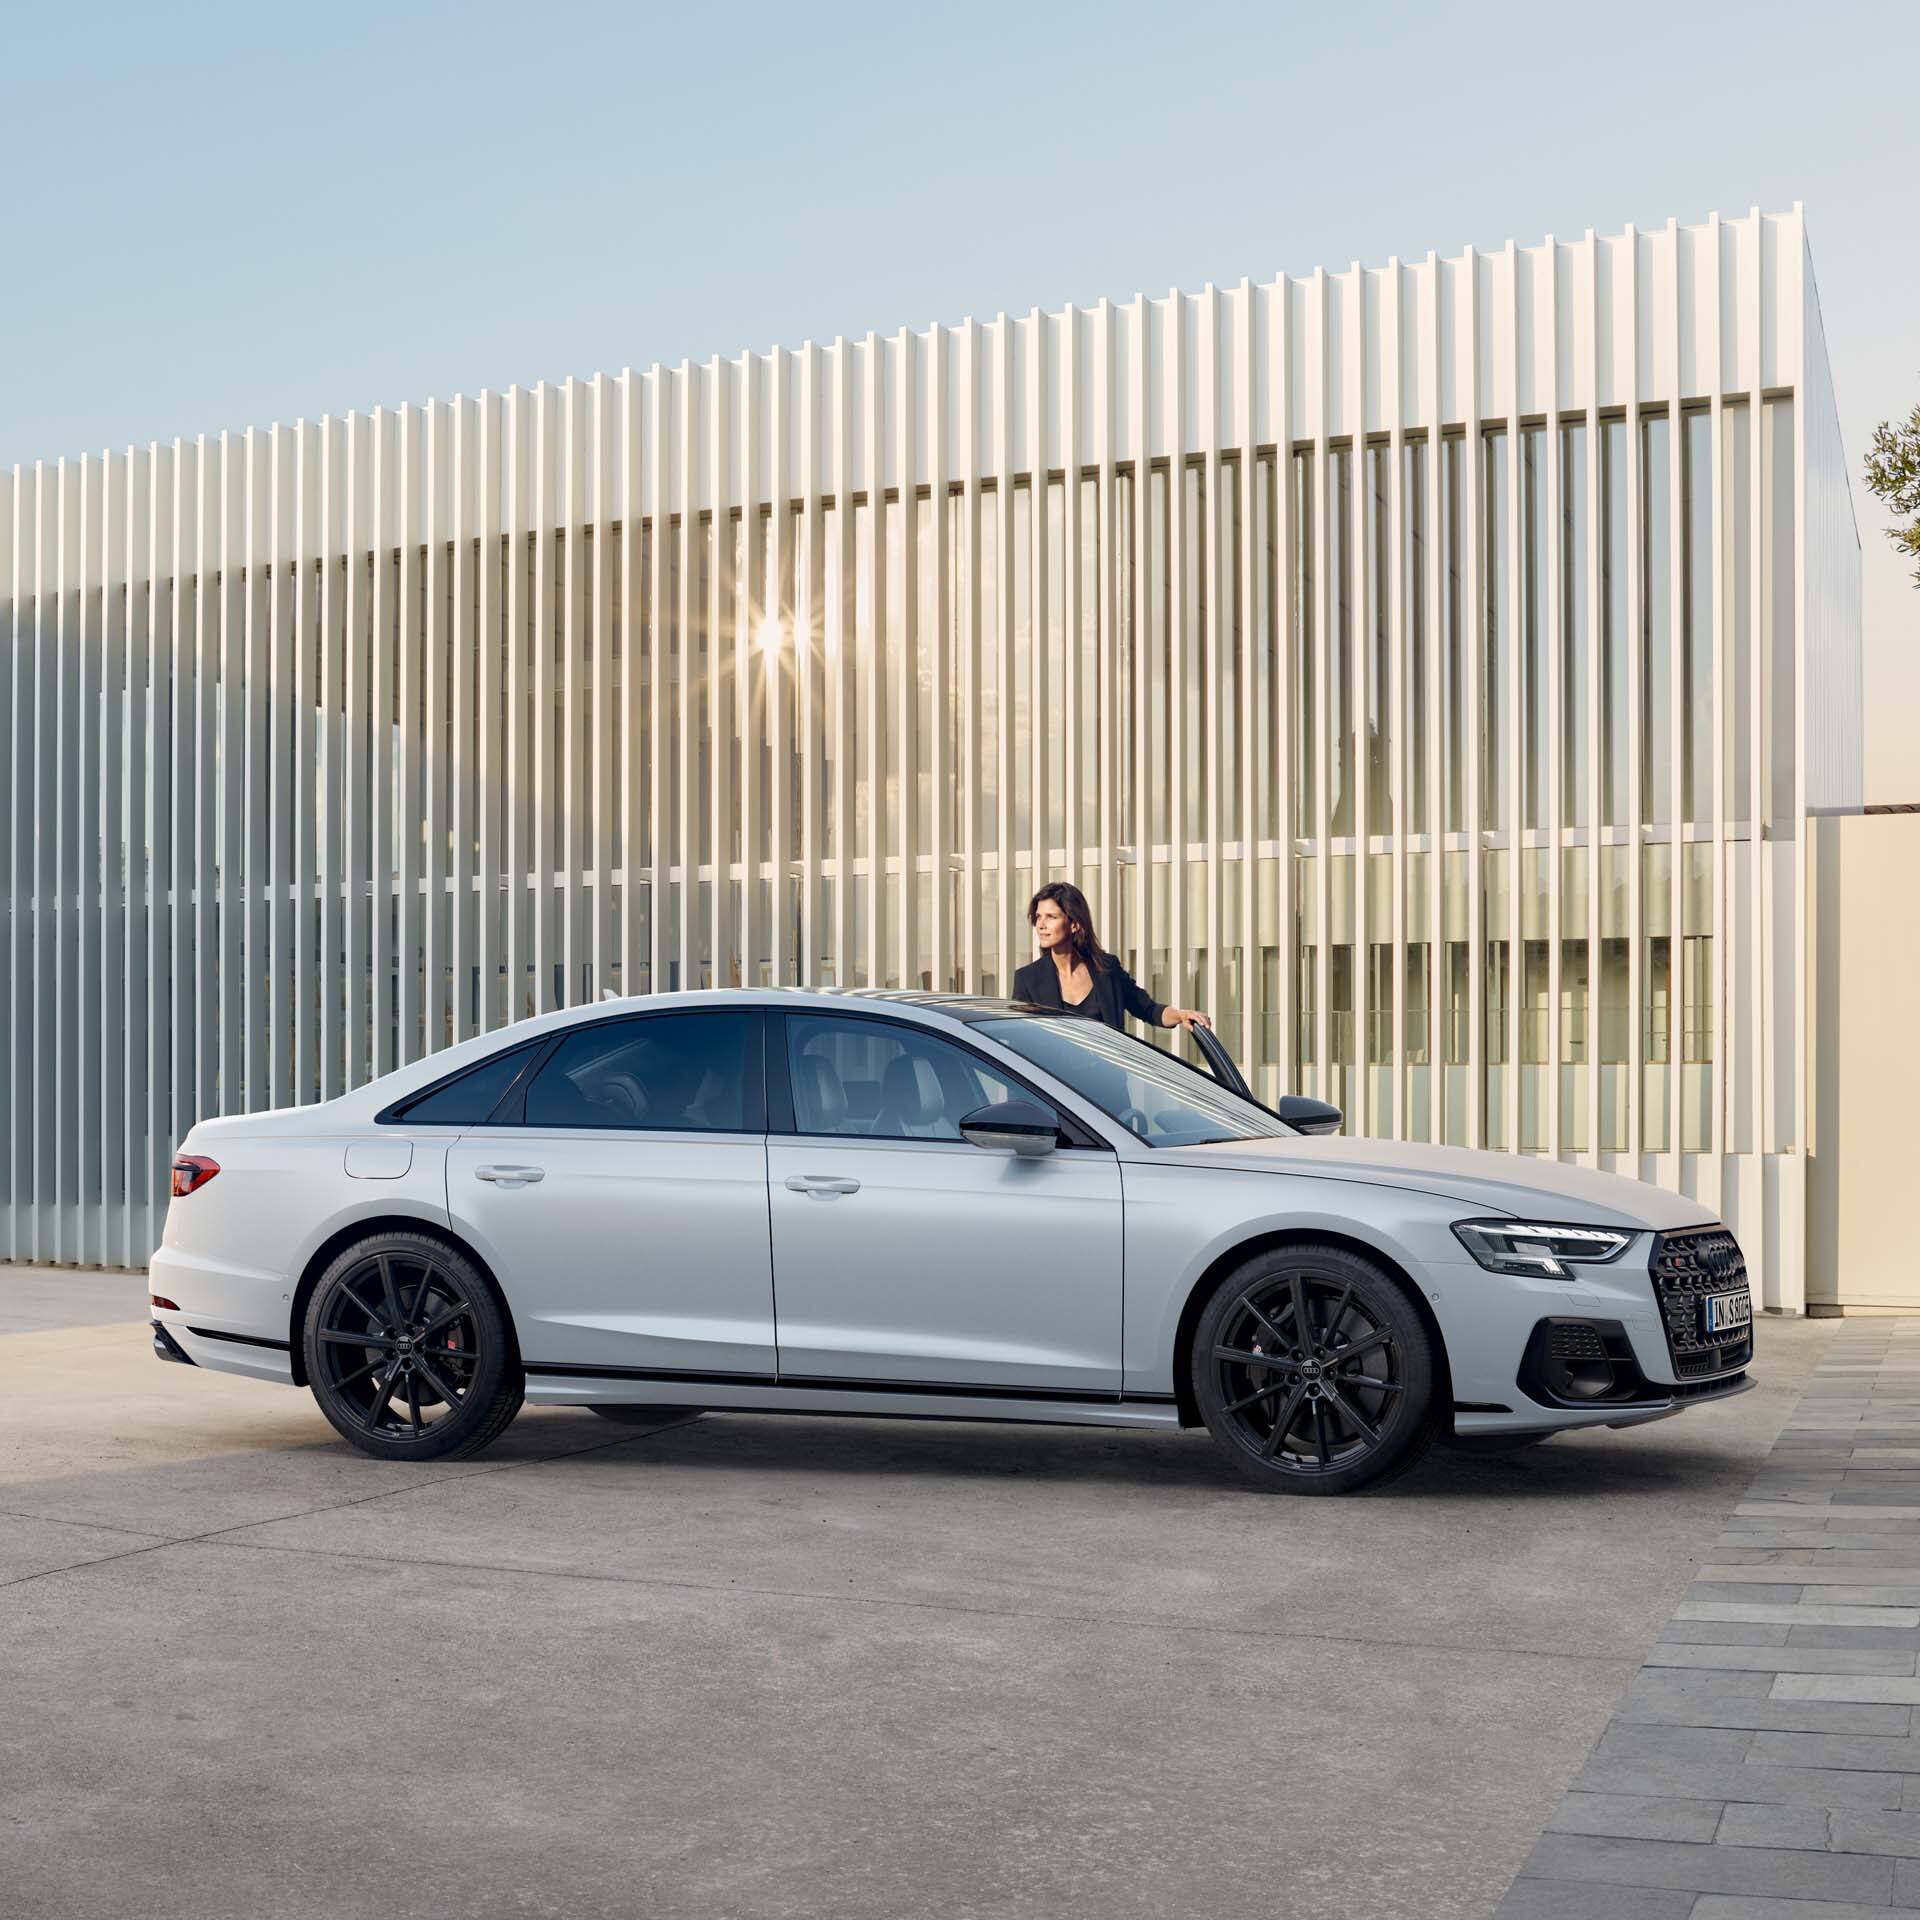 Exterieur Audi S8 Audi exclusive